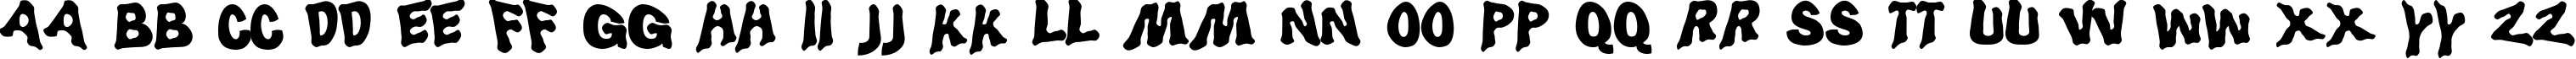 Пример написания английского алфавита шрифтом LuggerBug